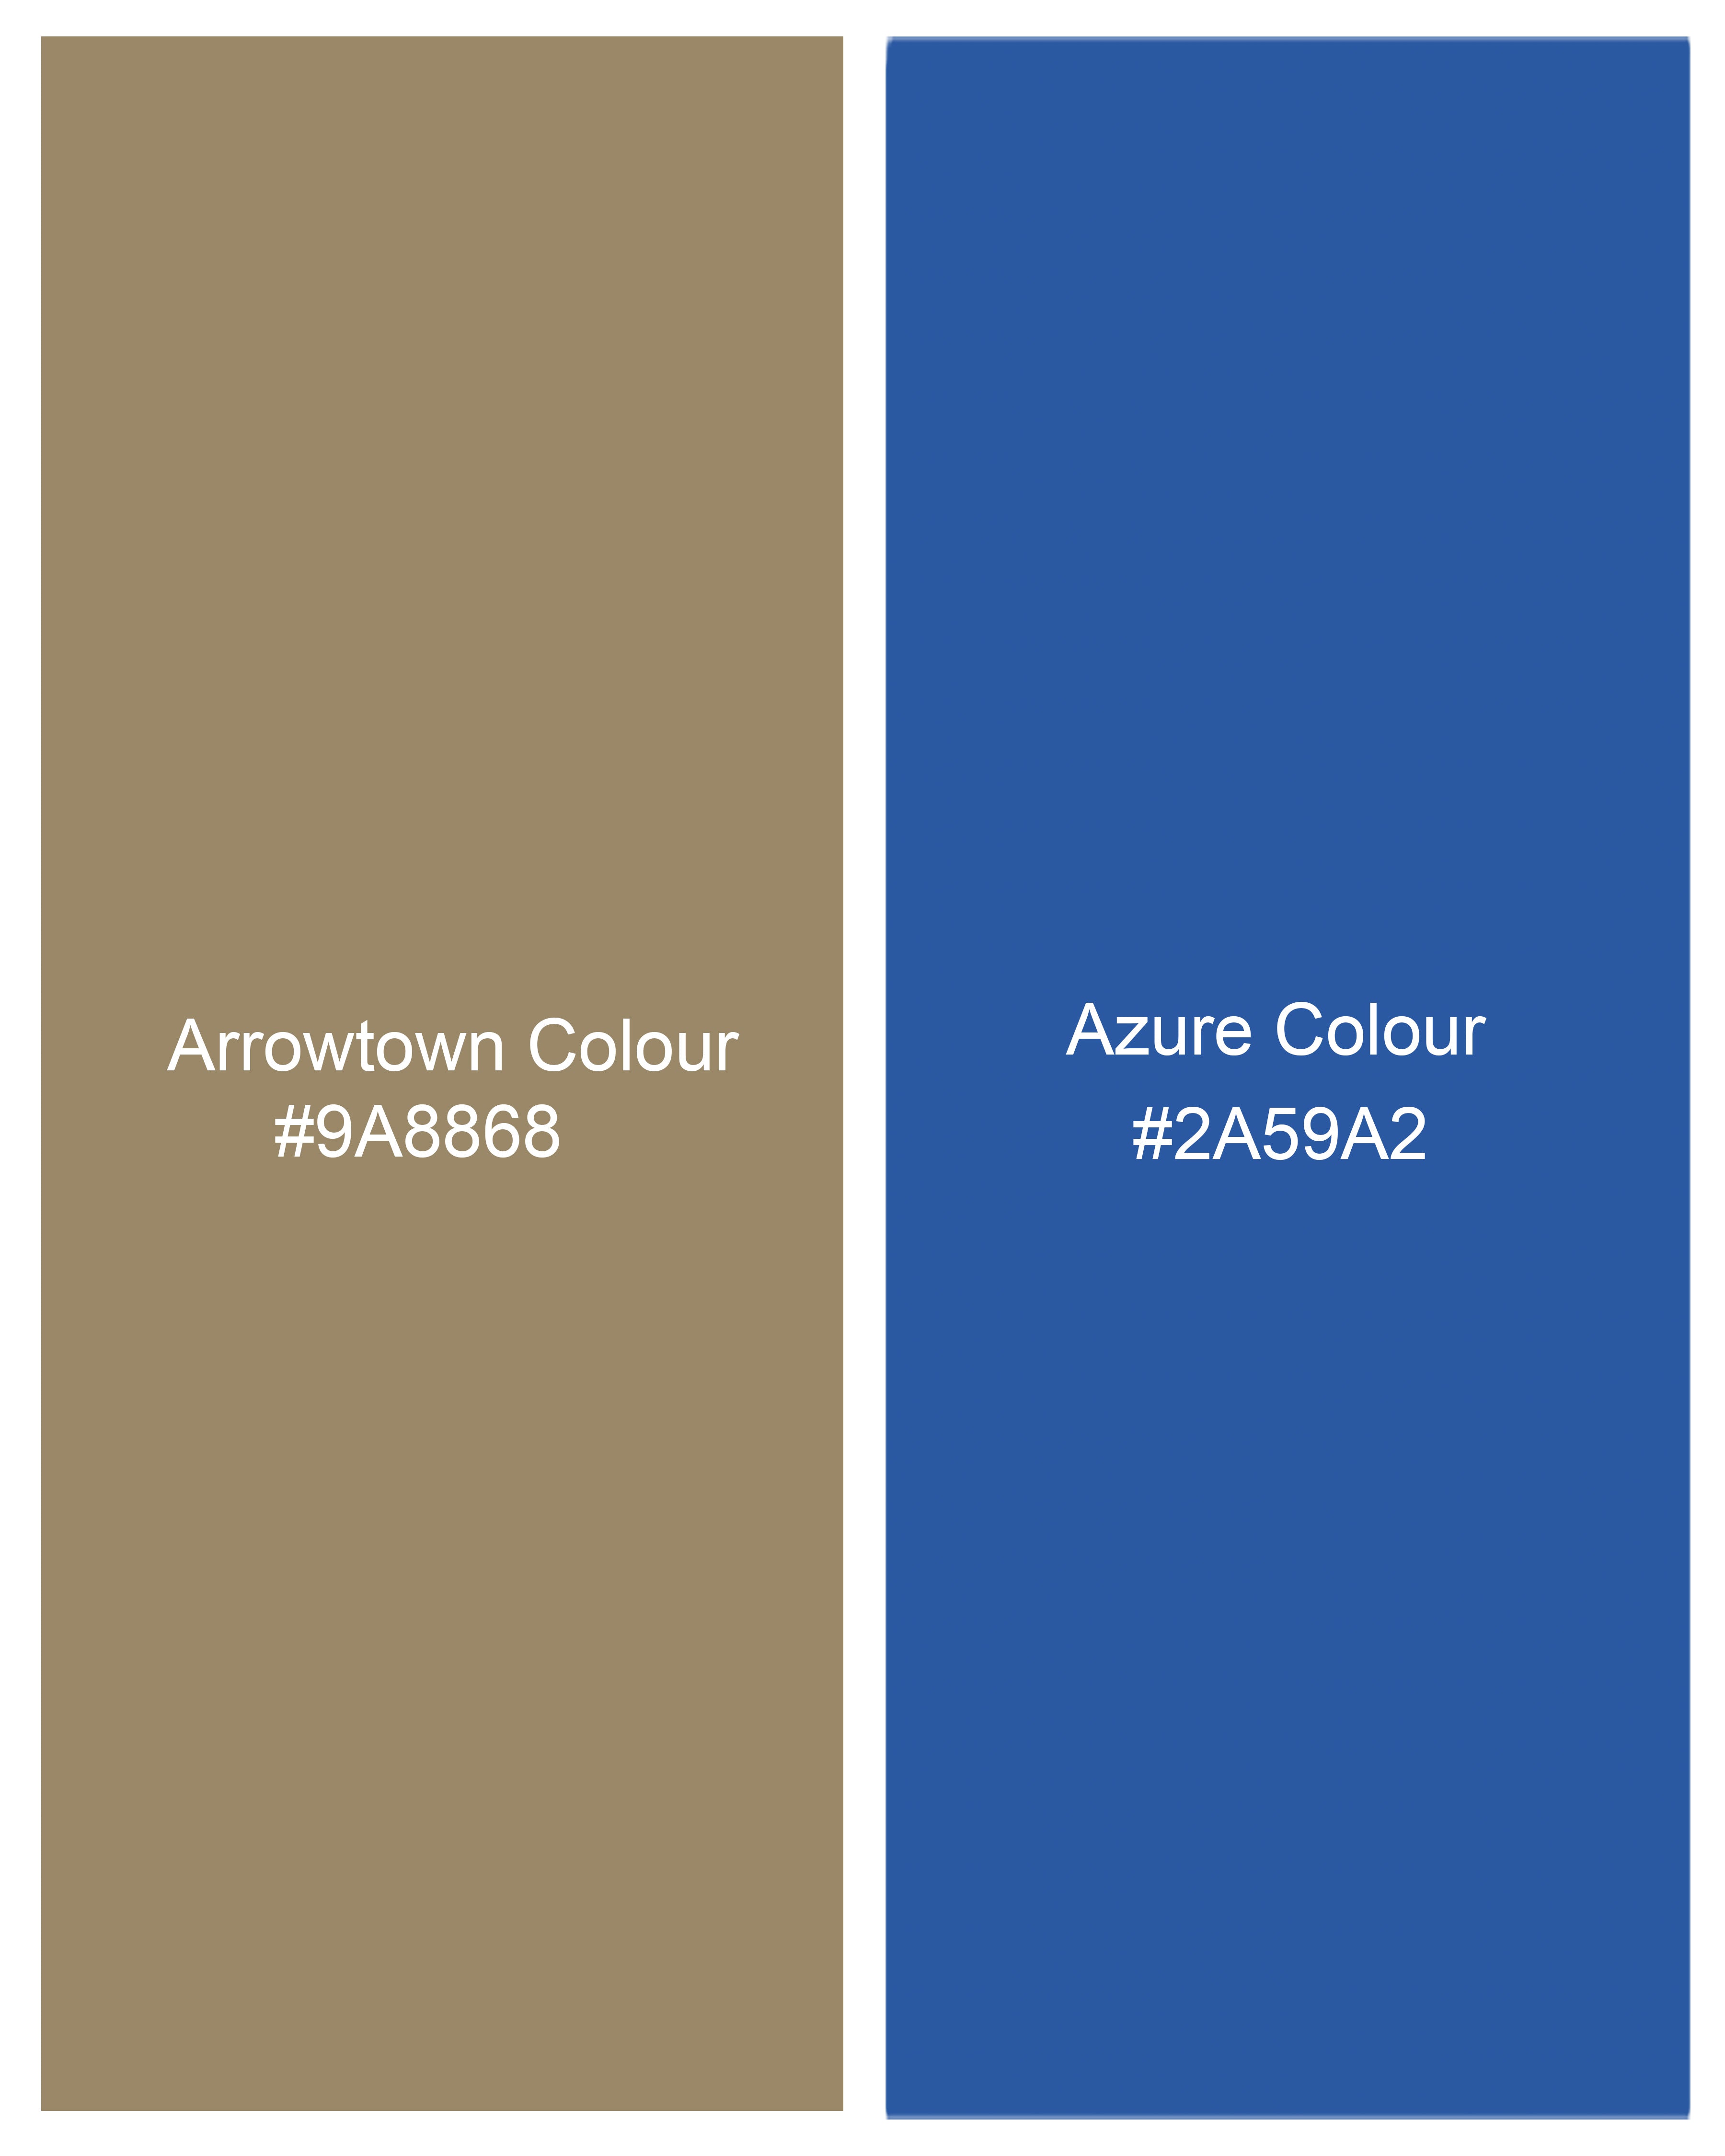 Arrowtown Brown with Azure Blue Plaid Trouser T2611-28, T2611-30, T2611-32, T2611-34, T2611-36, T2611-38, T2611-40, T2611-42, T2611-44